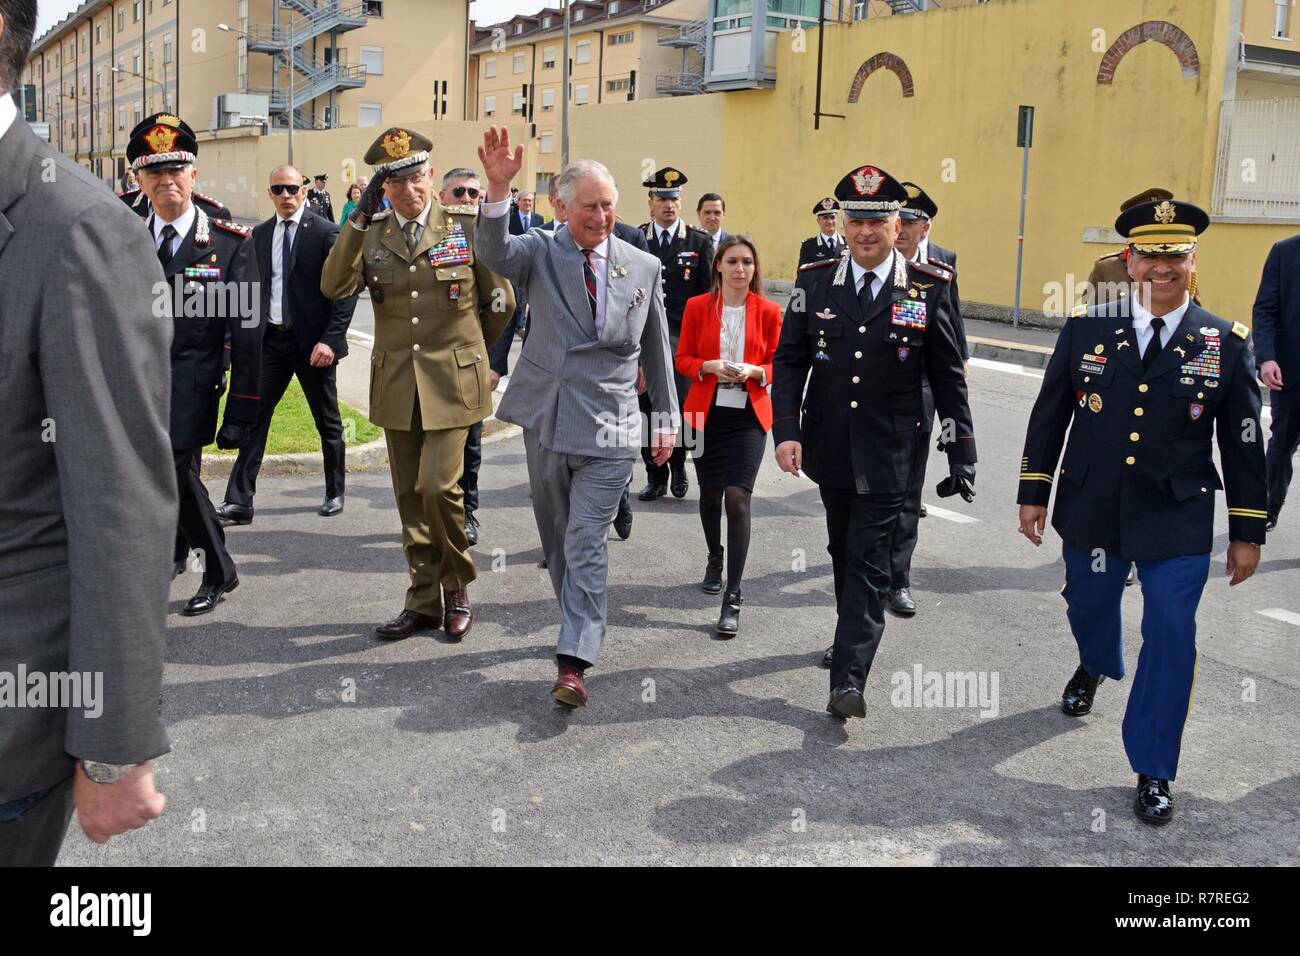 Su Alteza Real, el Príncipe Carlos, Príncipe de Gales, durante la visita al centro de excelencia para unidades de policía de estabilidad (CoESPU) de Vicenza, Italia, 1 de abril de 2017. Foto de stock